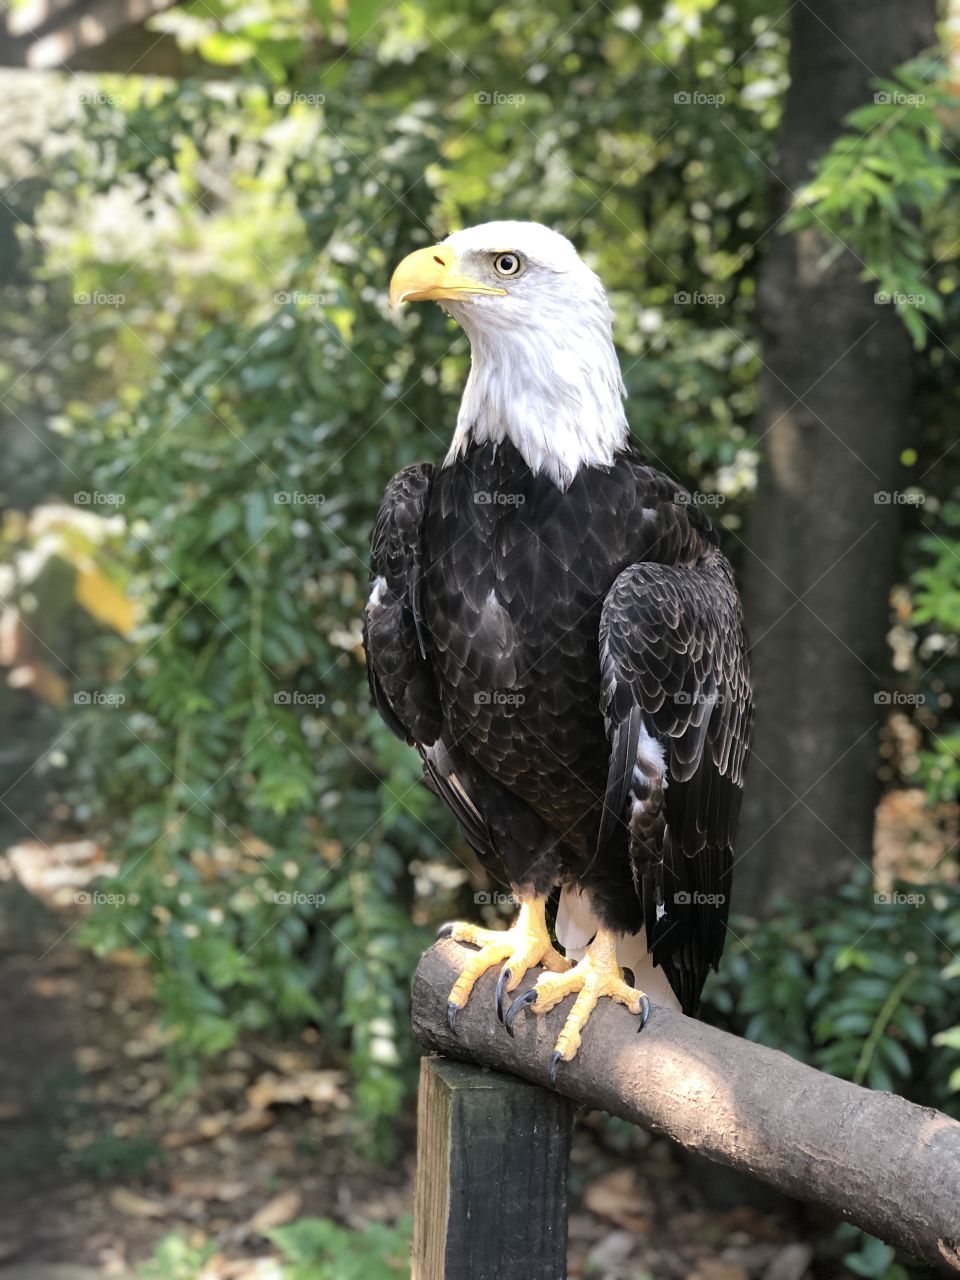 Eagle at the Atlanta Zoo